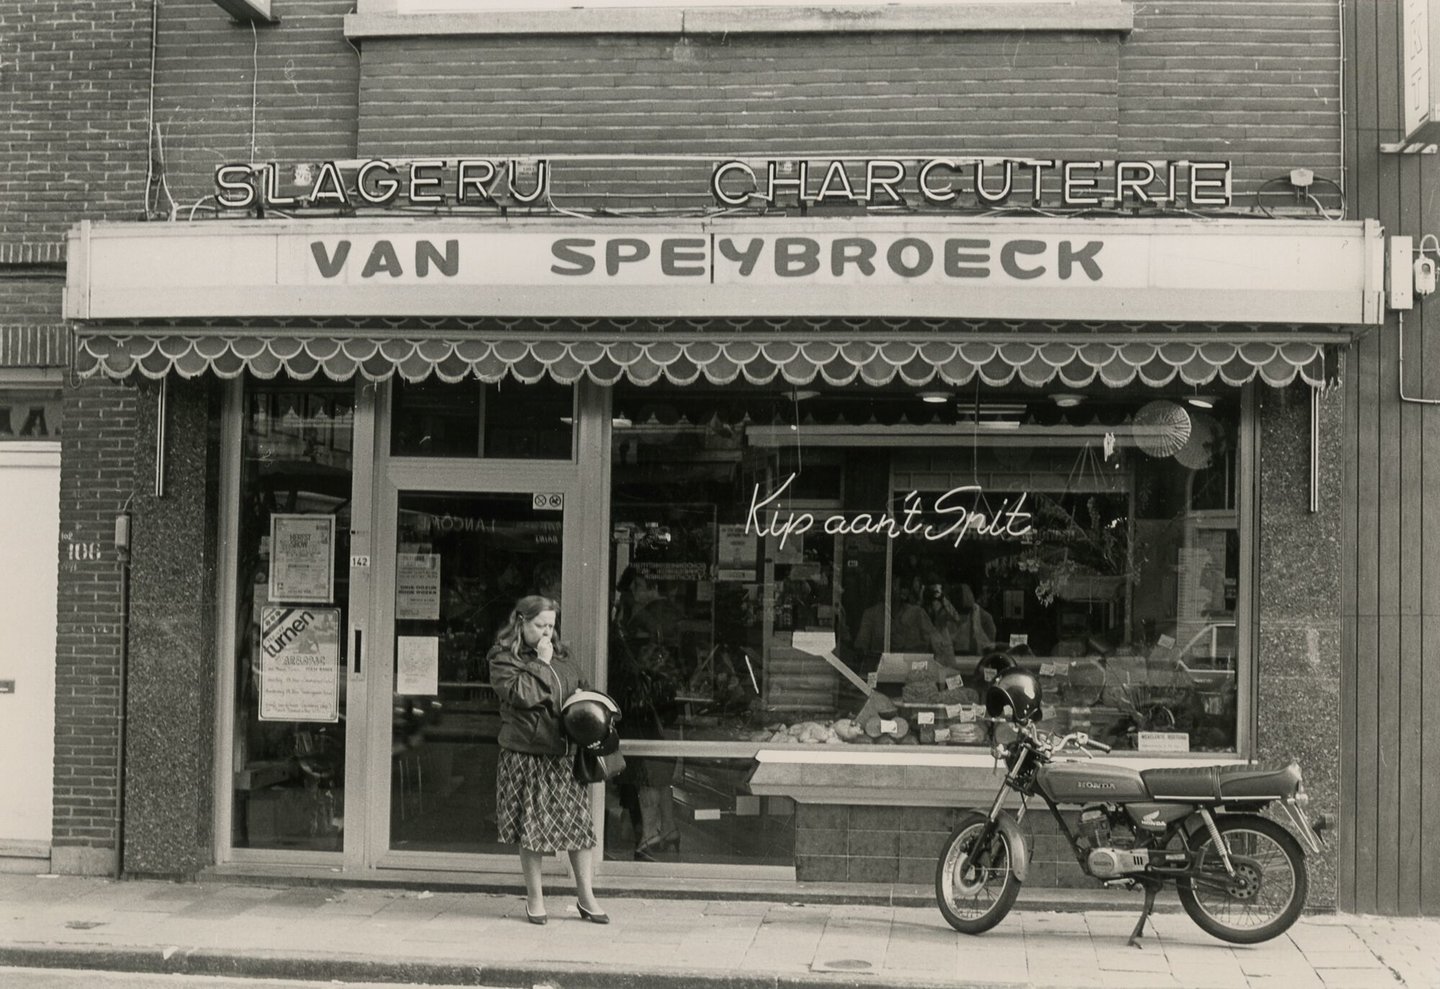 Etalage van beenhouwerij Van Speybroeck in Gent